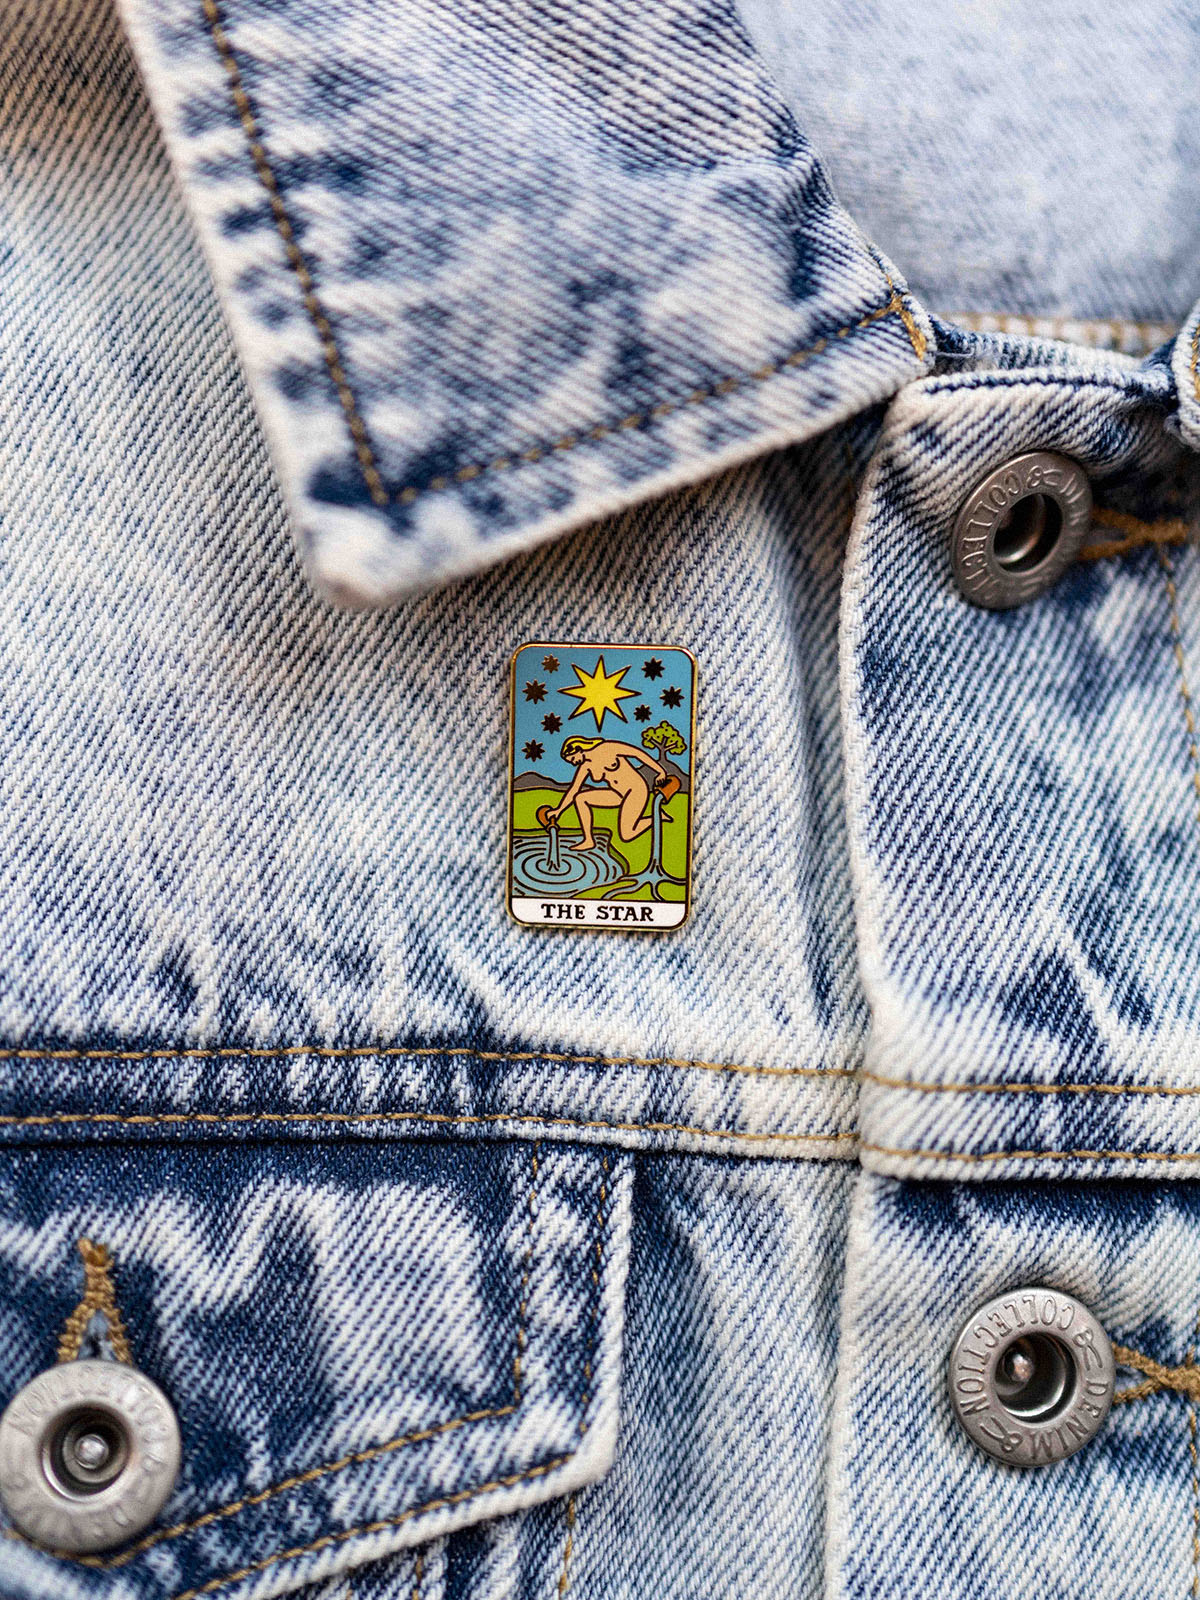 Tarot Card Star Pin